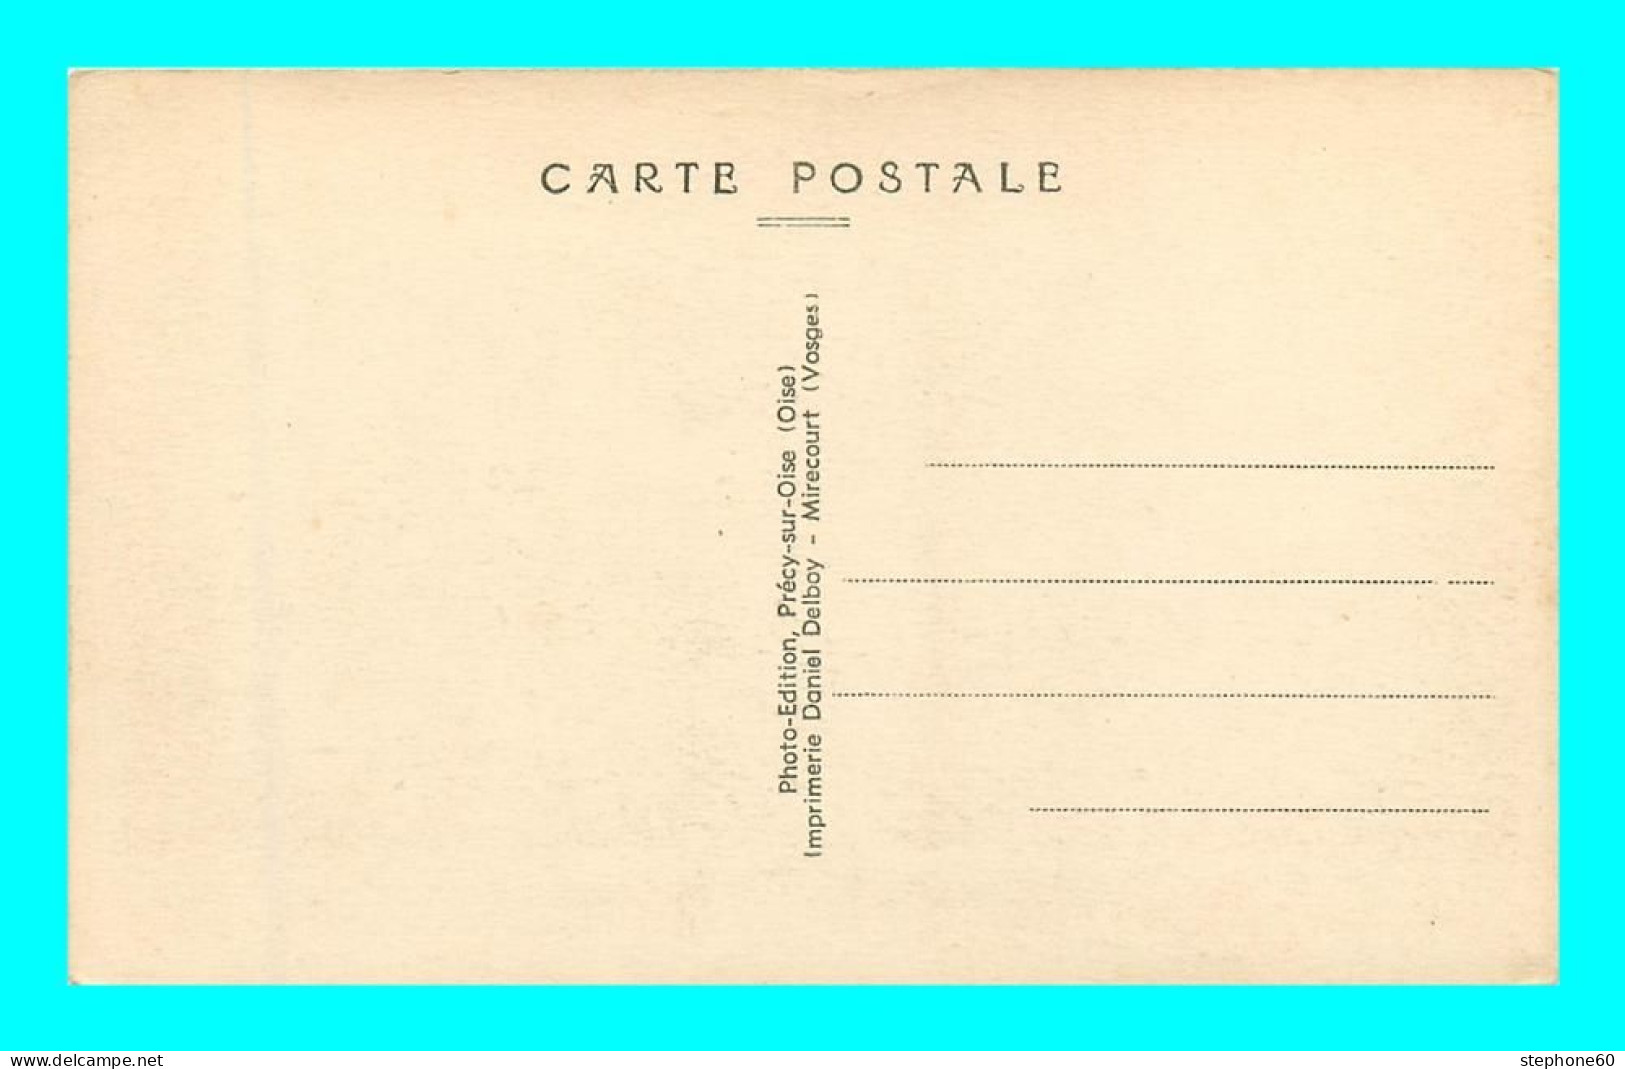 A929 / 461 91 - FORET De SENART Carrefour Du Chene D'Antin - Sénart